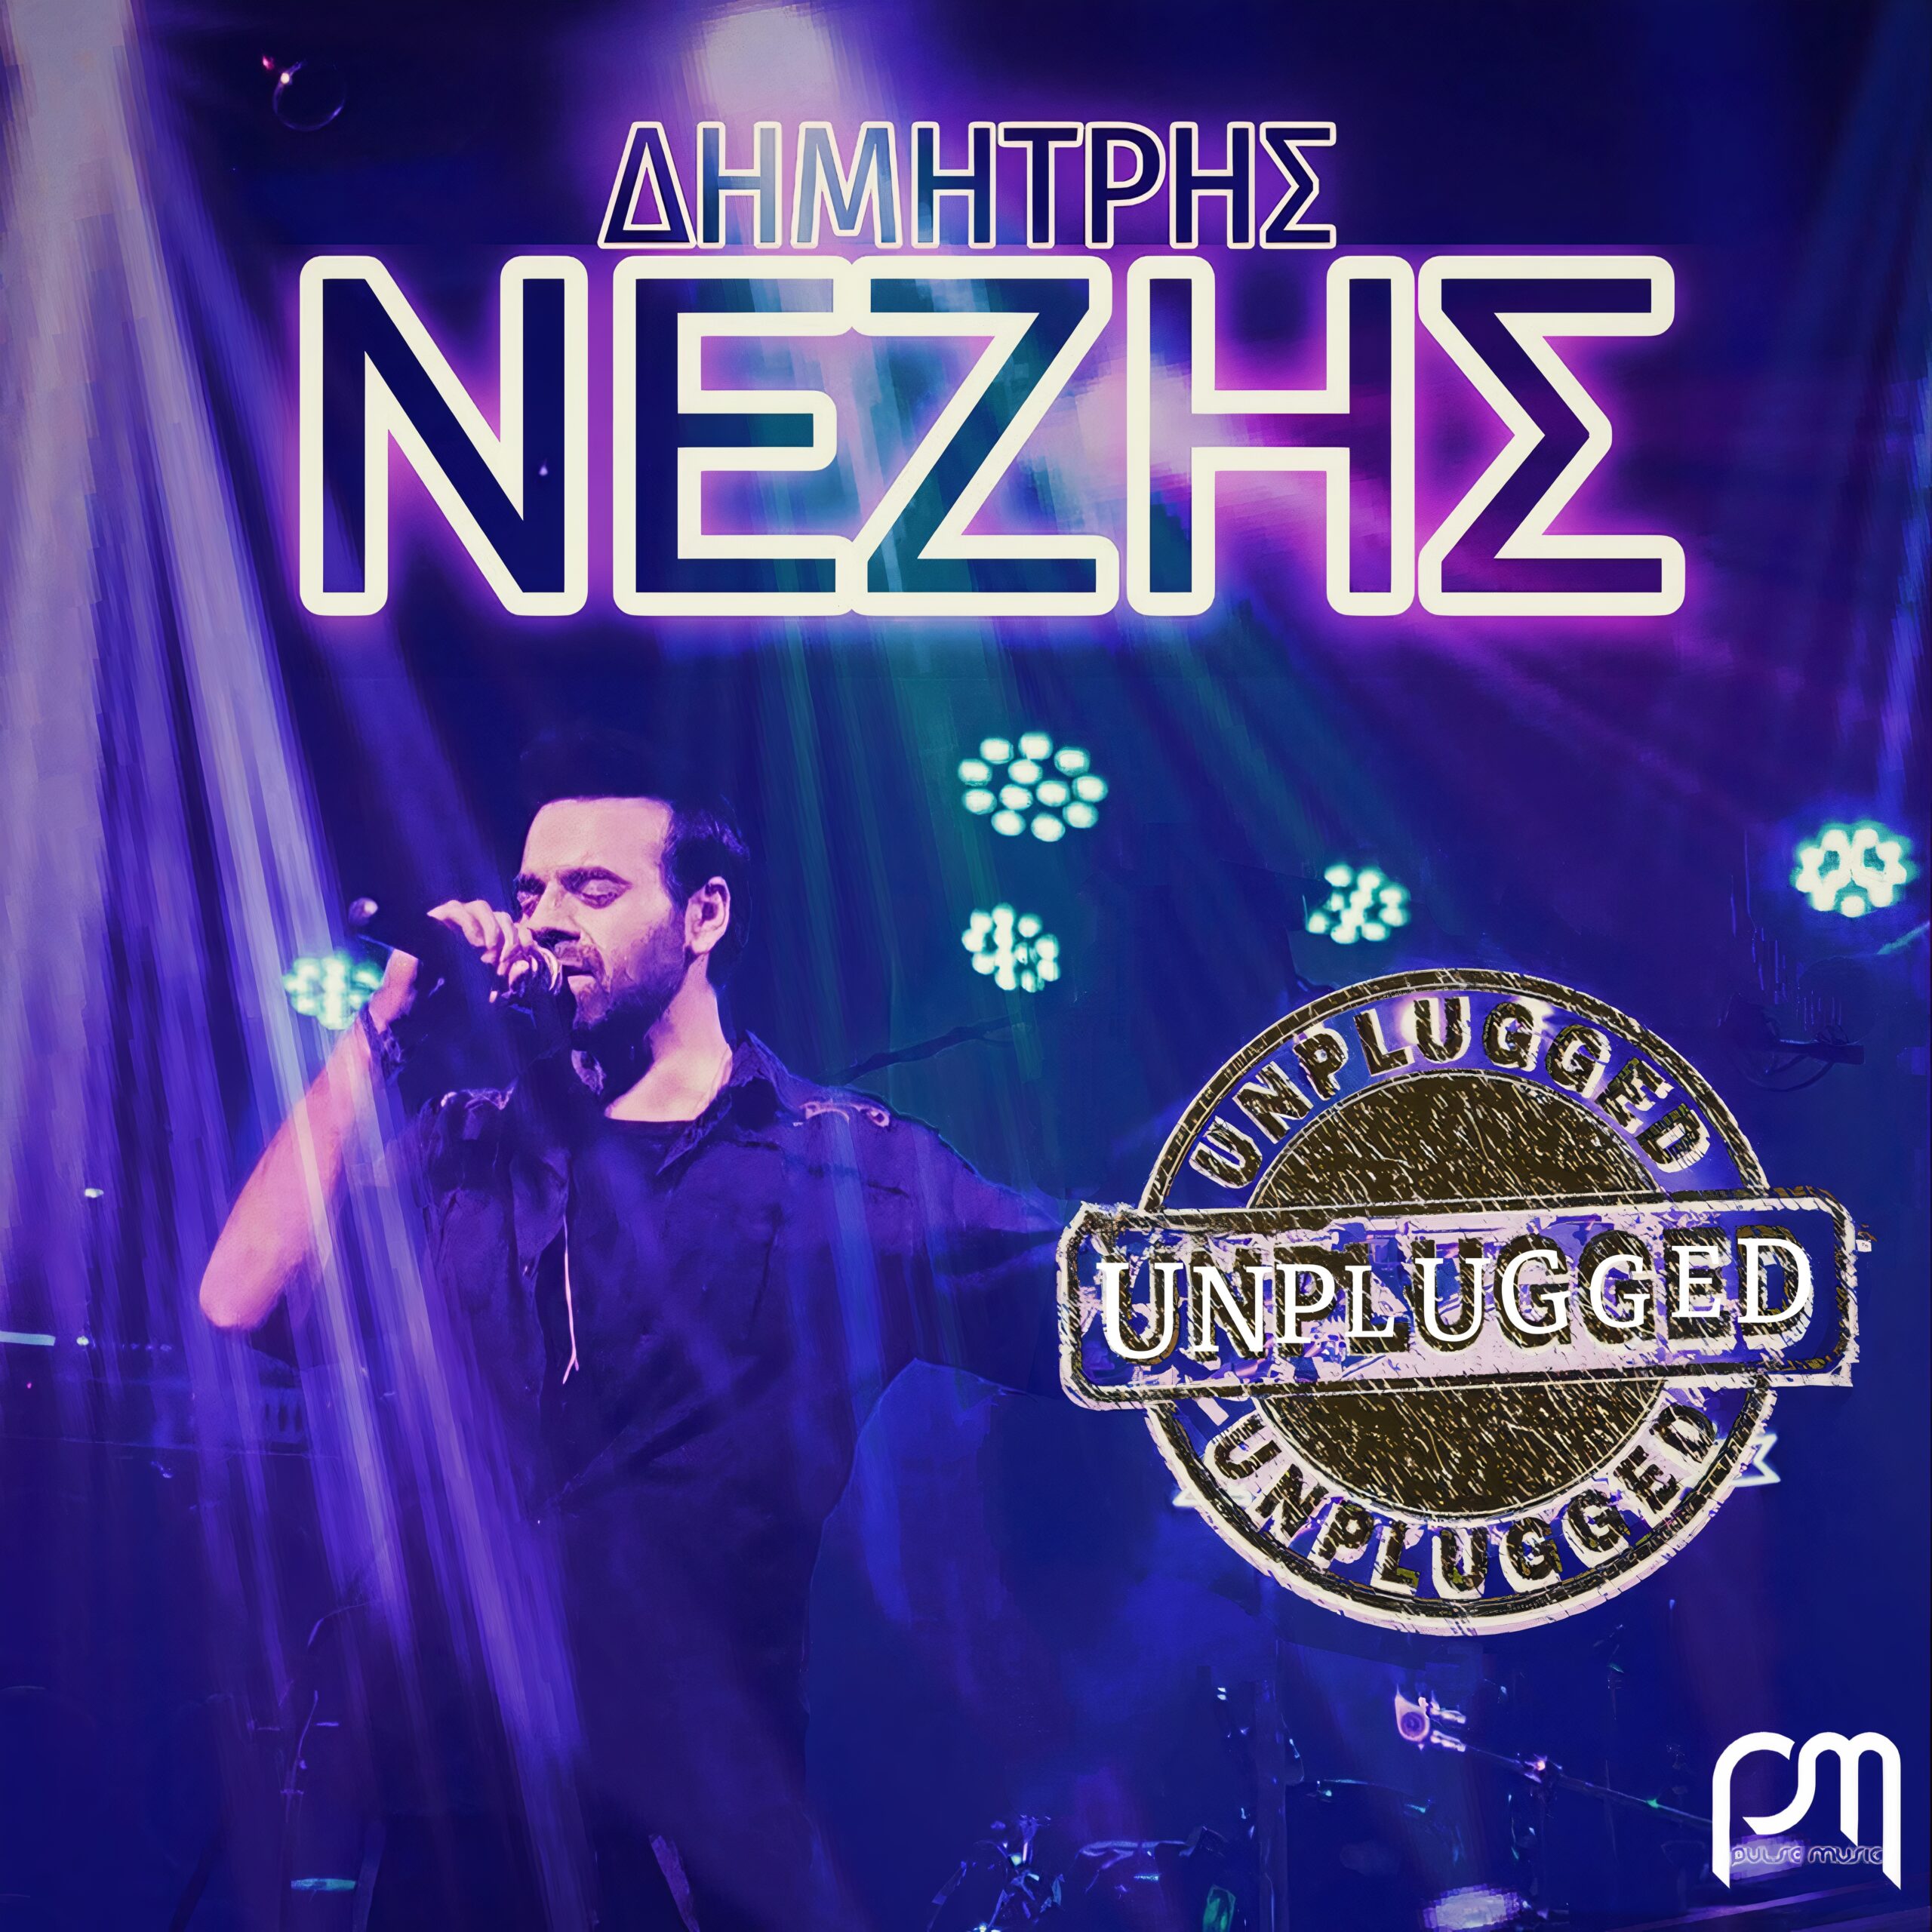 Ο Δημήτρης Νέζης κυκλοφορεί ένα «Unplugged Live» άλμπουμ